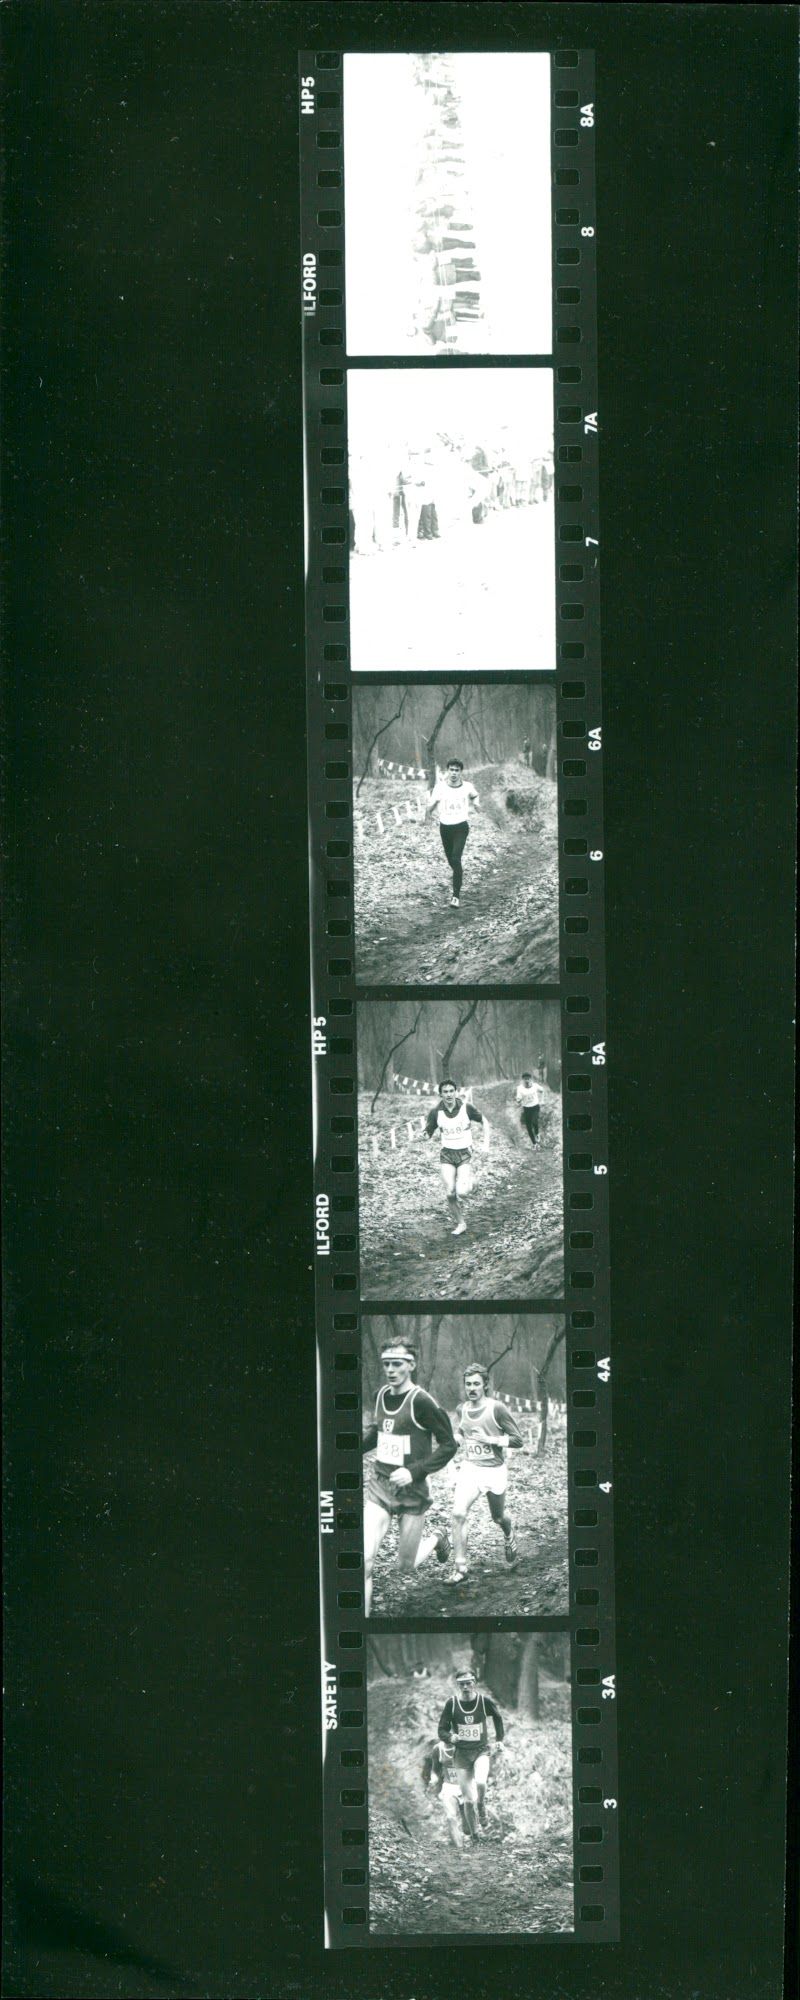 ANGERMUUD DDK CROSSMASTER SHEEPMEAT ILFORD SAFETY FILM ILFORDSWER ADD - Vintage Photograph